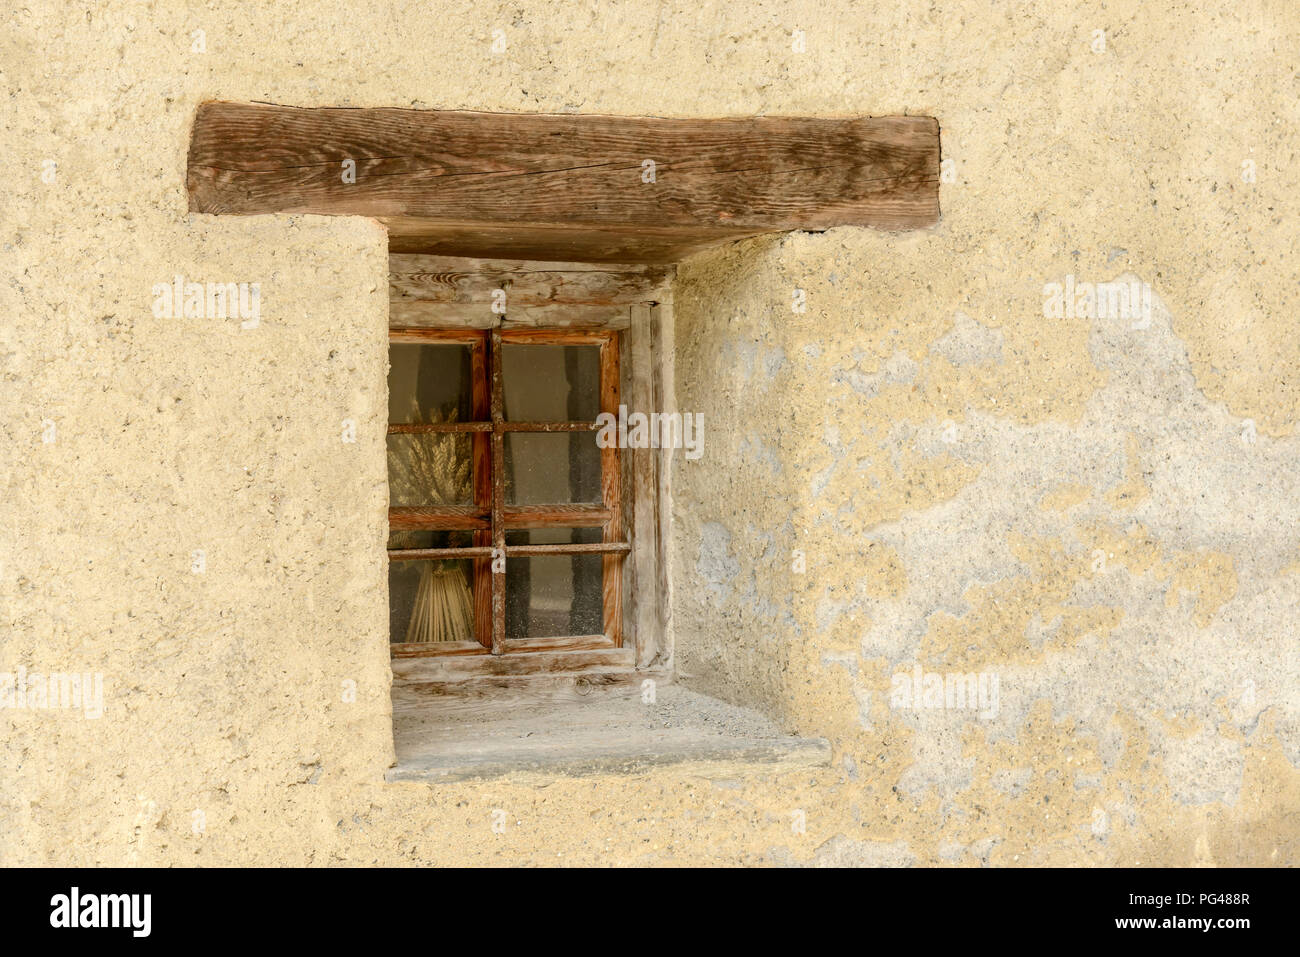 Détail de l'ancienne maison traditionnelle petite fenêtre avec linteau en bois, tourné par un beau jour d'été à Gressoney Saint Jean, vallée du Lys, Aoste, Italie Banque D'Images